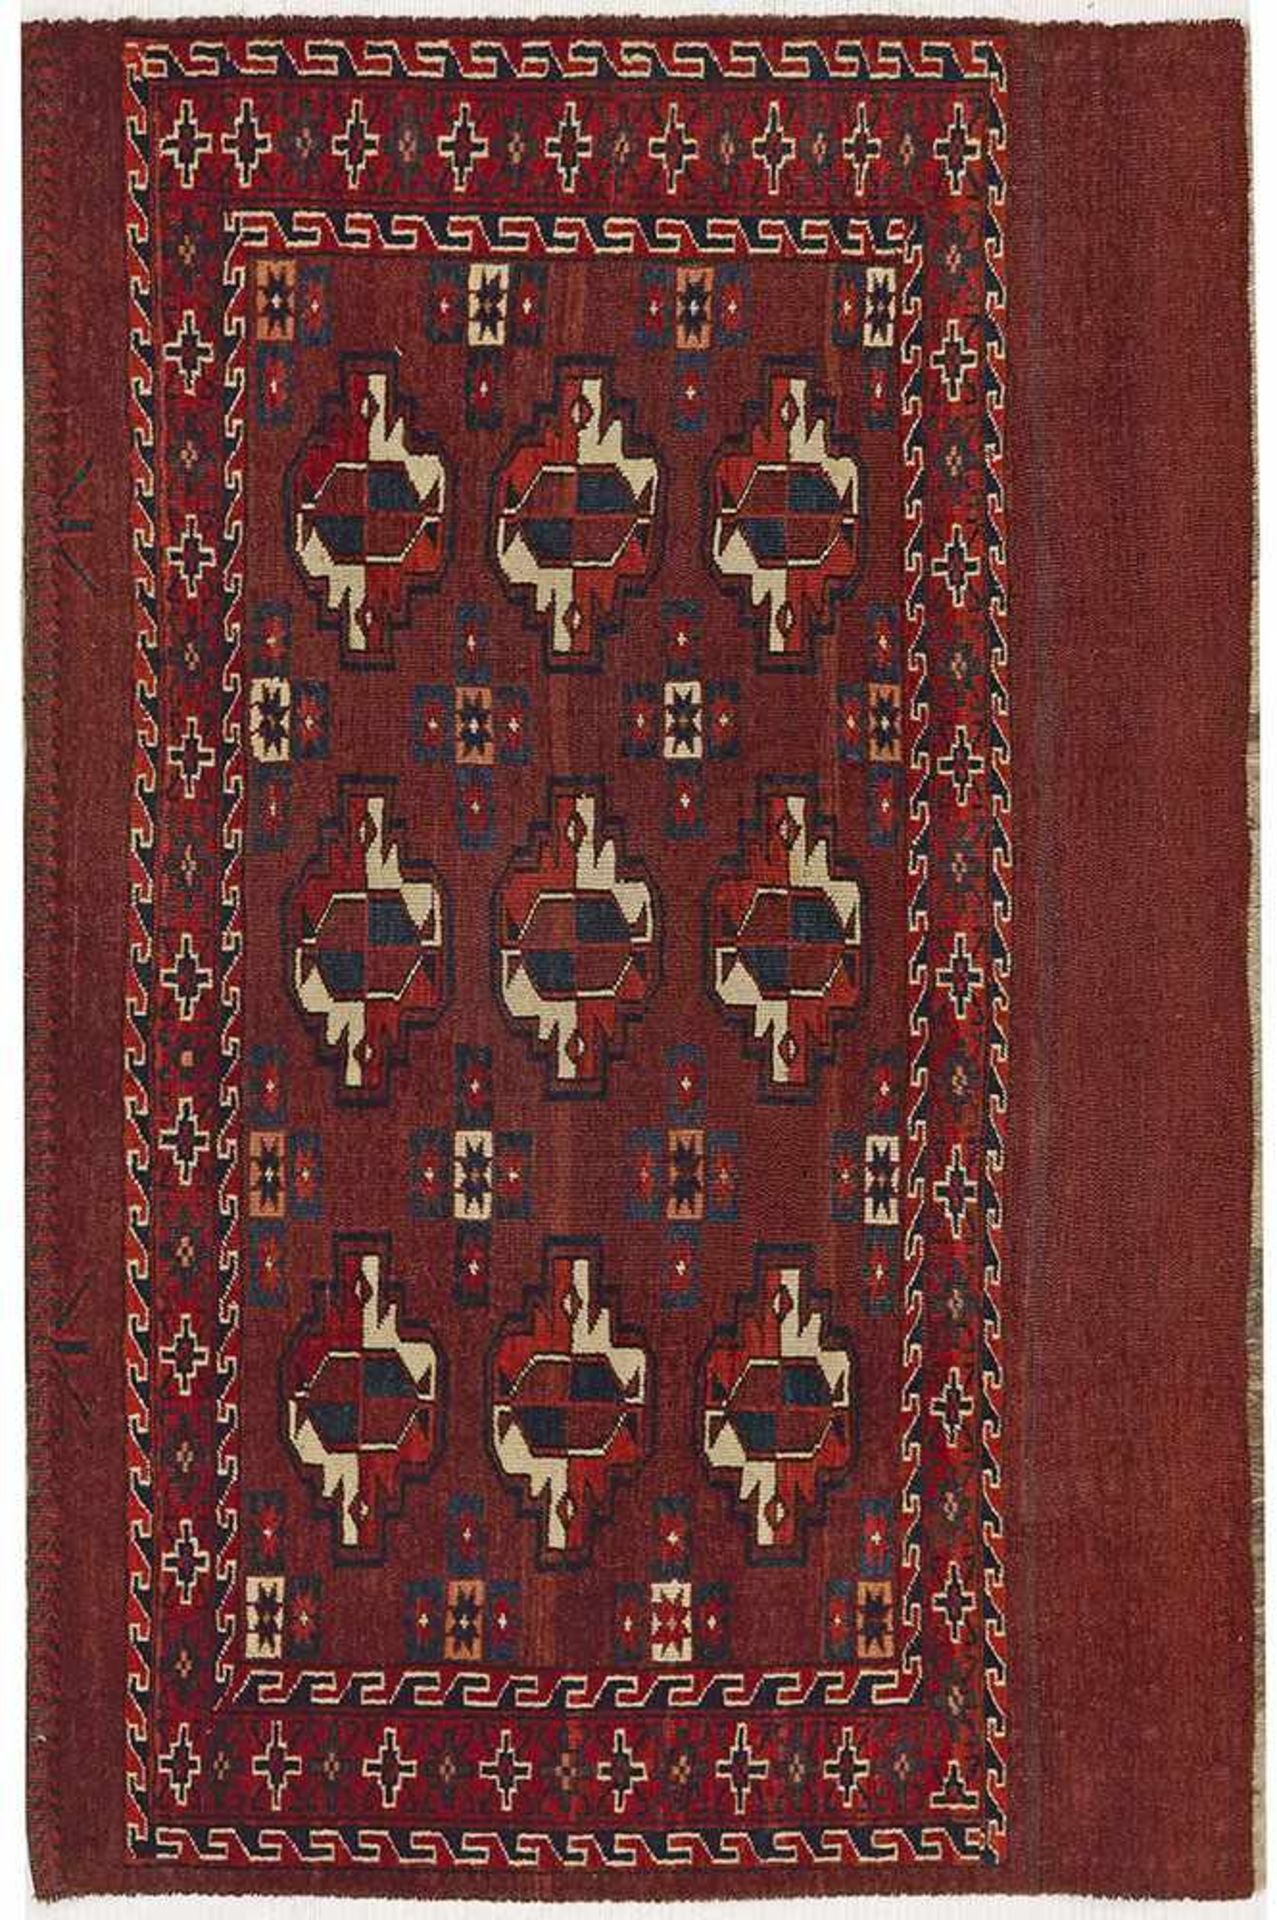 Antike Yomud Tschowel-TaschenfrontTurkmenistan. Ende 19. Jh.; Wolle auf Wolle. Im roten Innenfeld